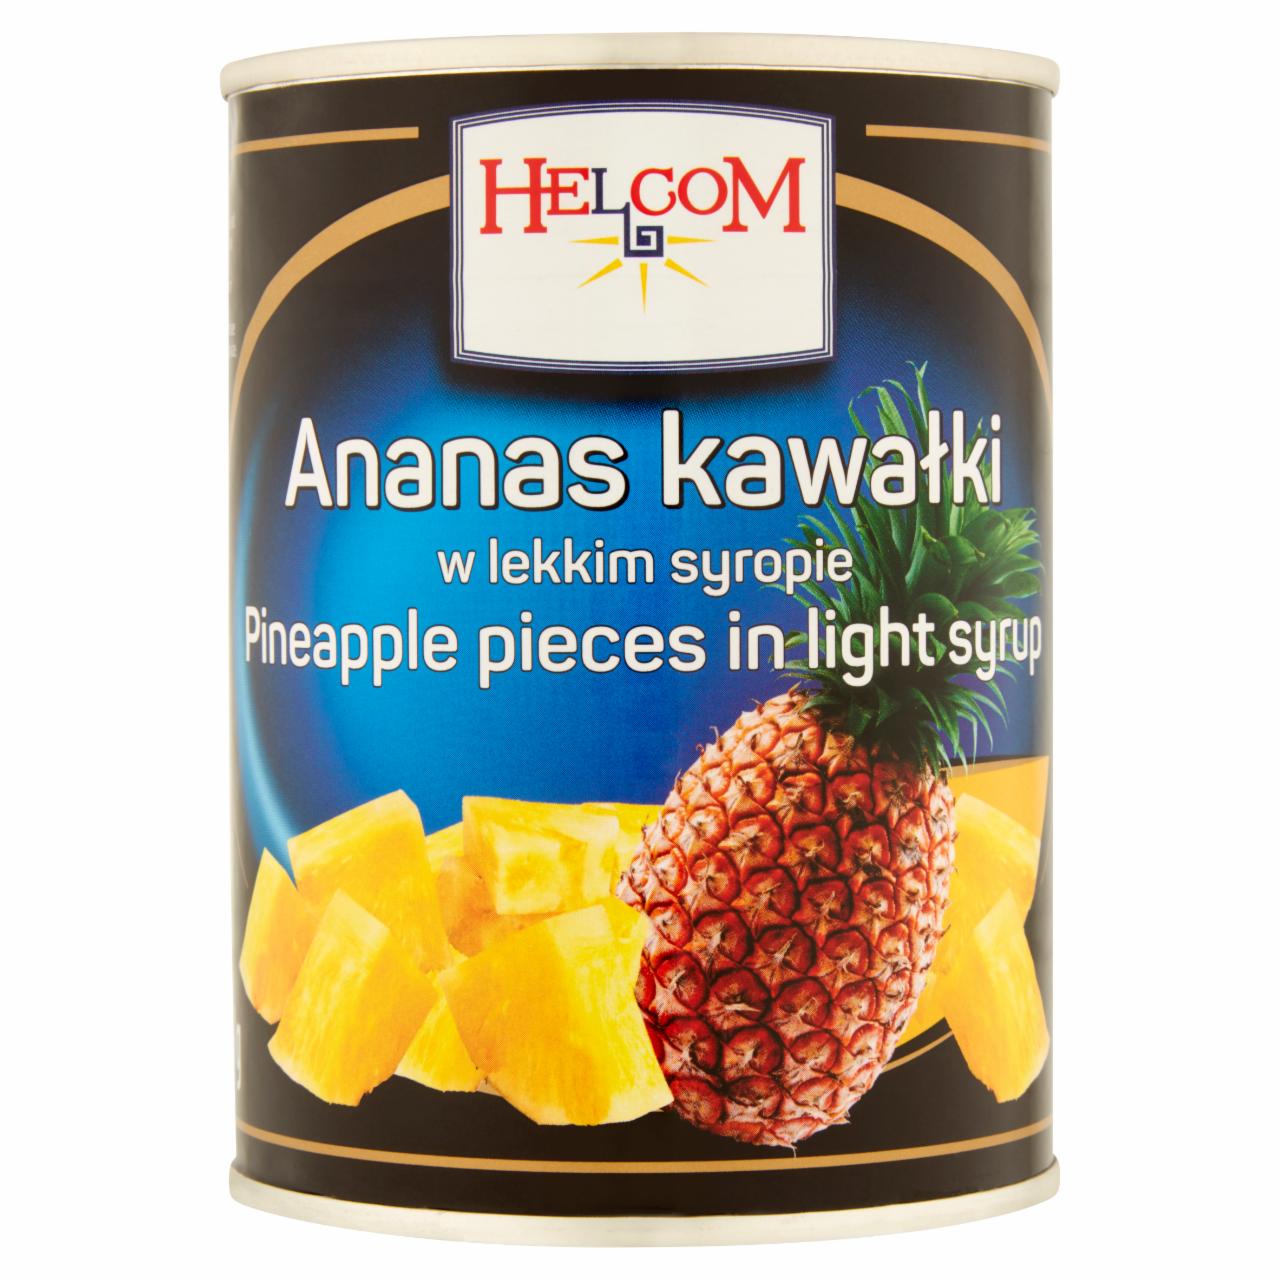 Zdjęcia - Helcom Ananas kawałki w lekkim syropie 565 g